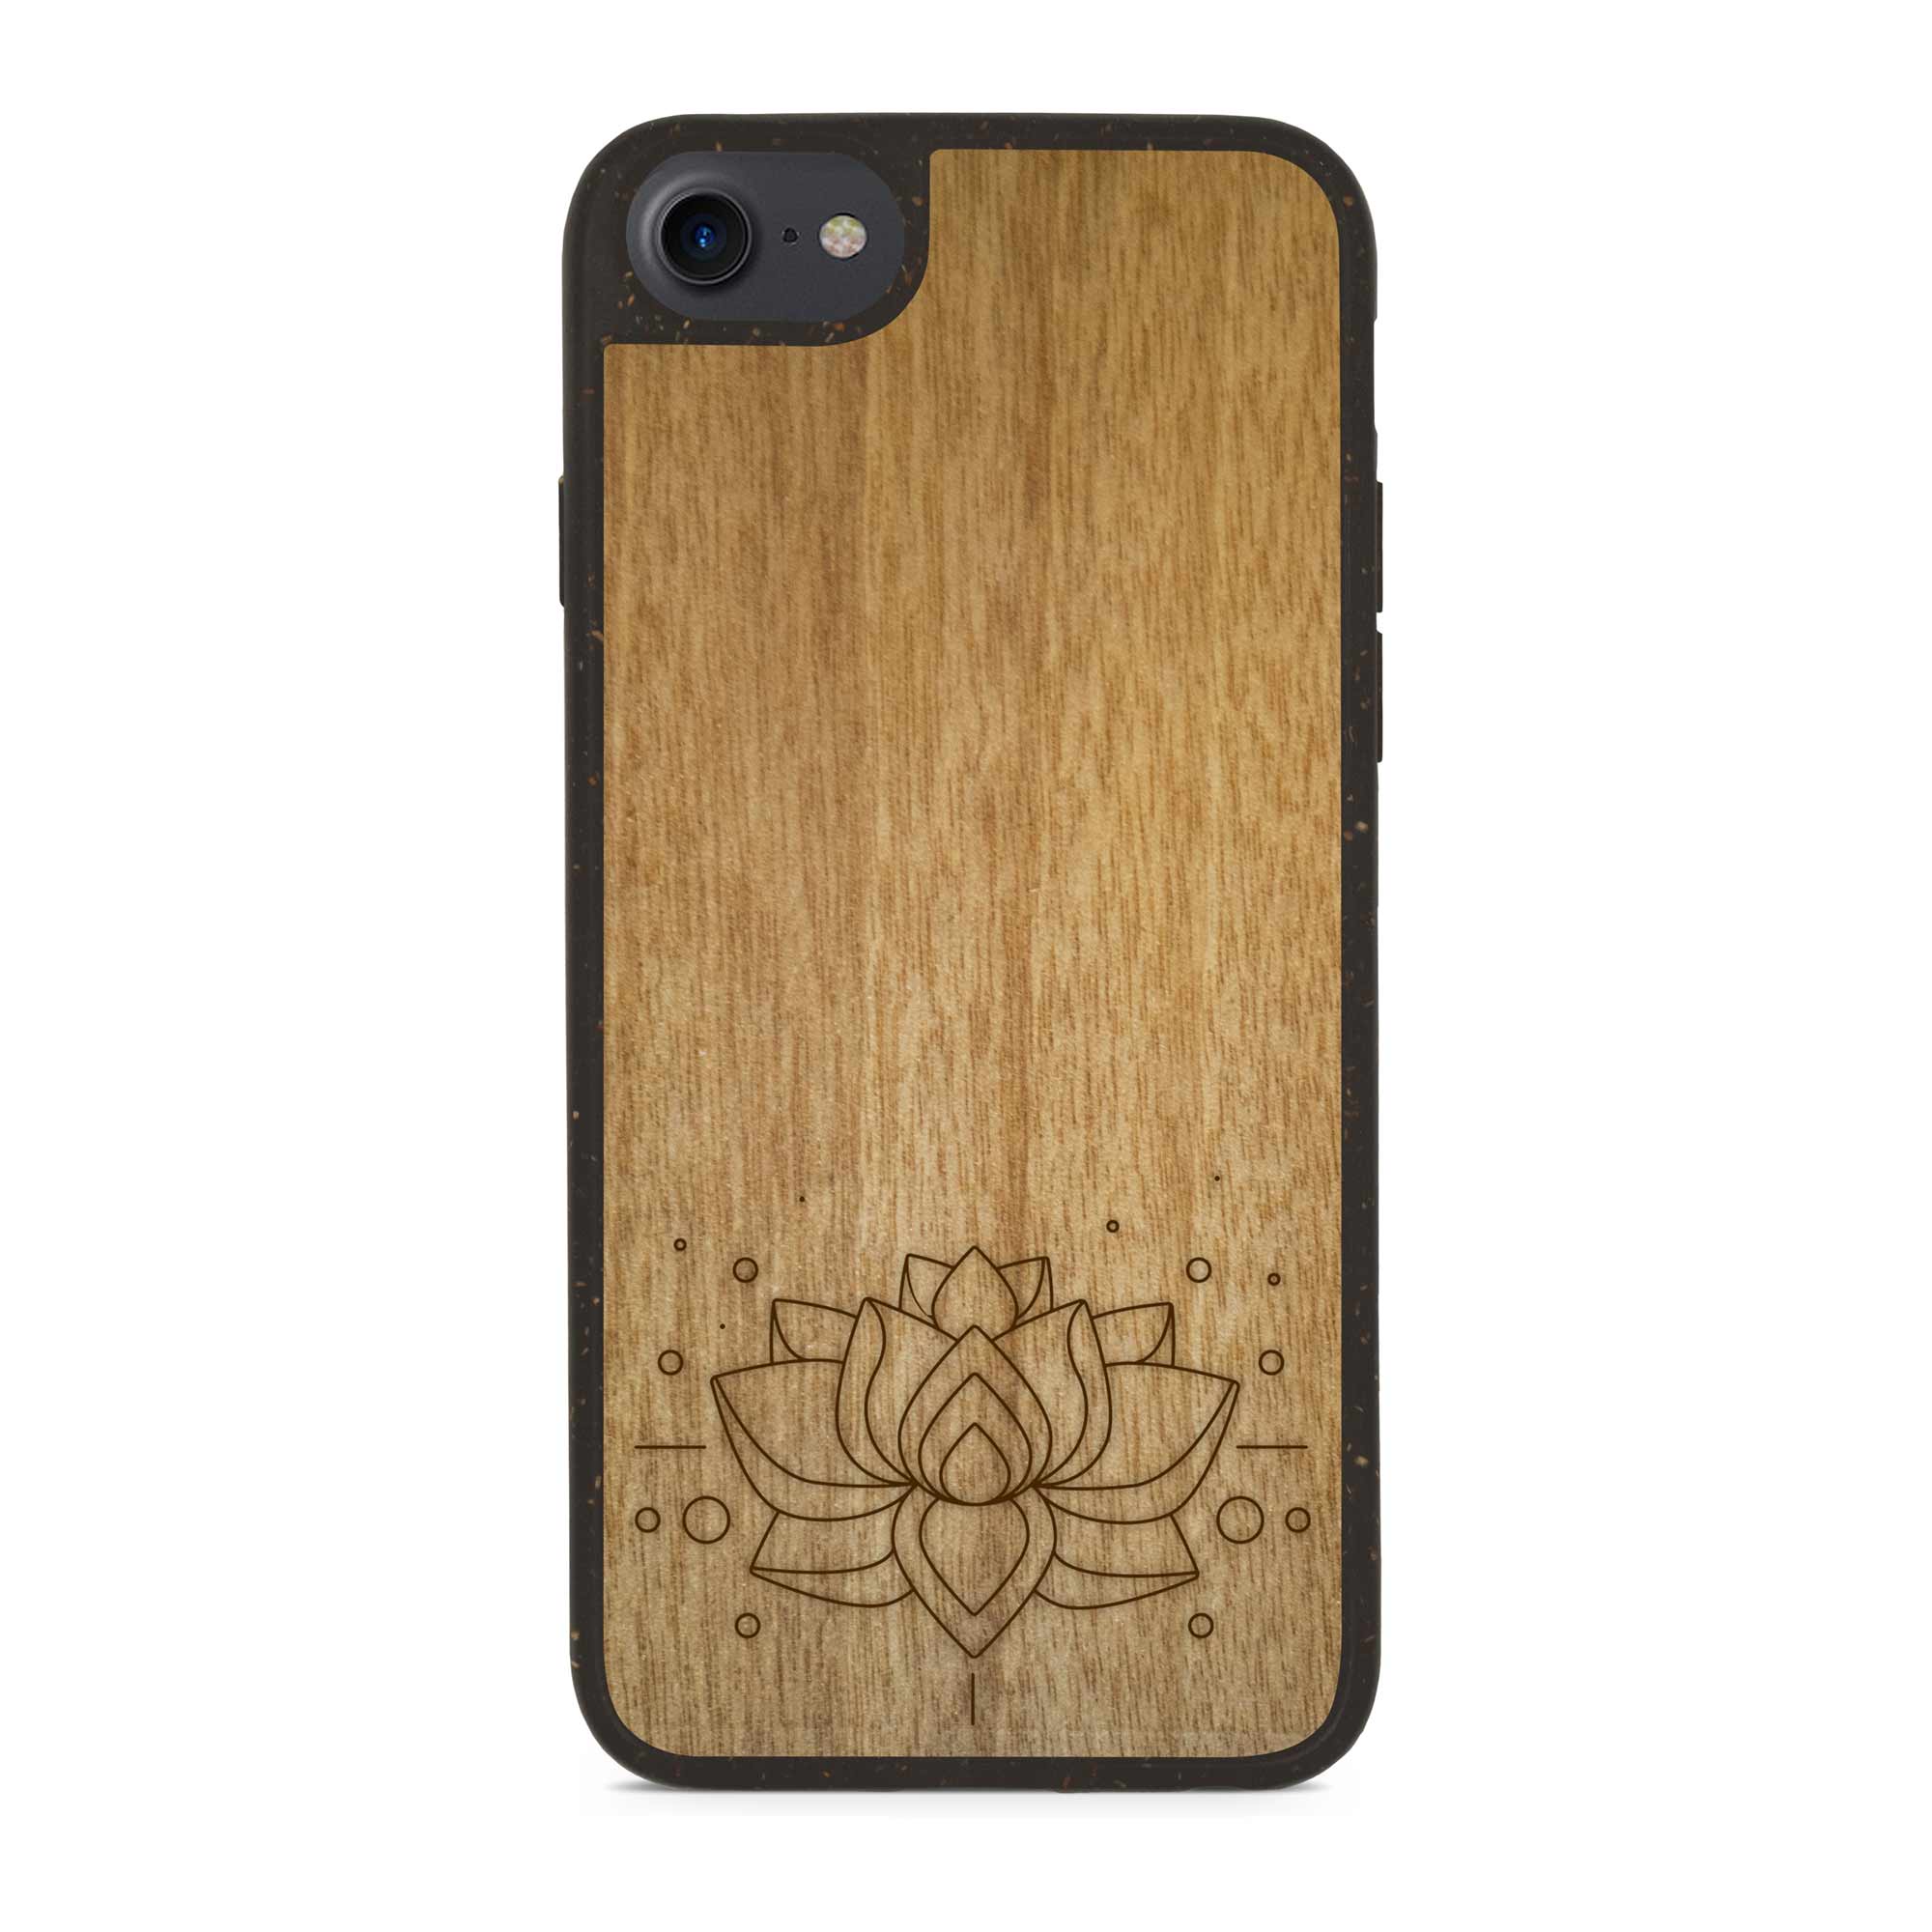 Coque iphone 7 Lotus gravée en bois compostable